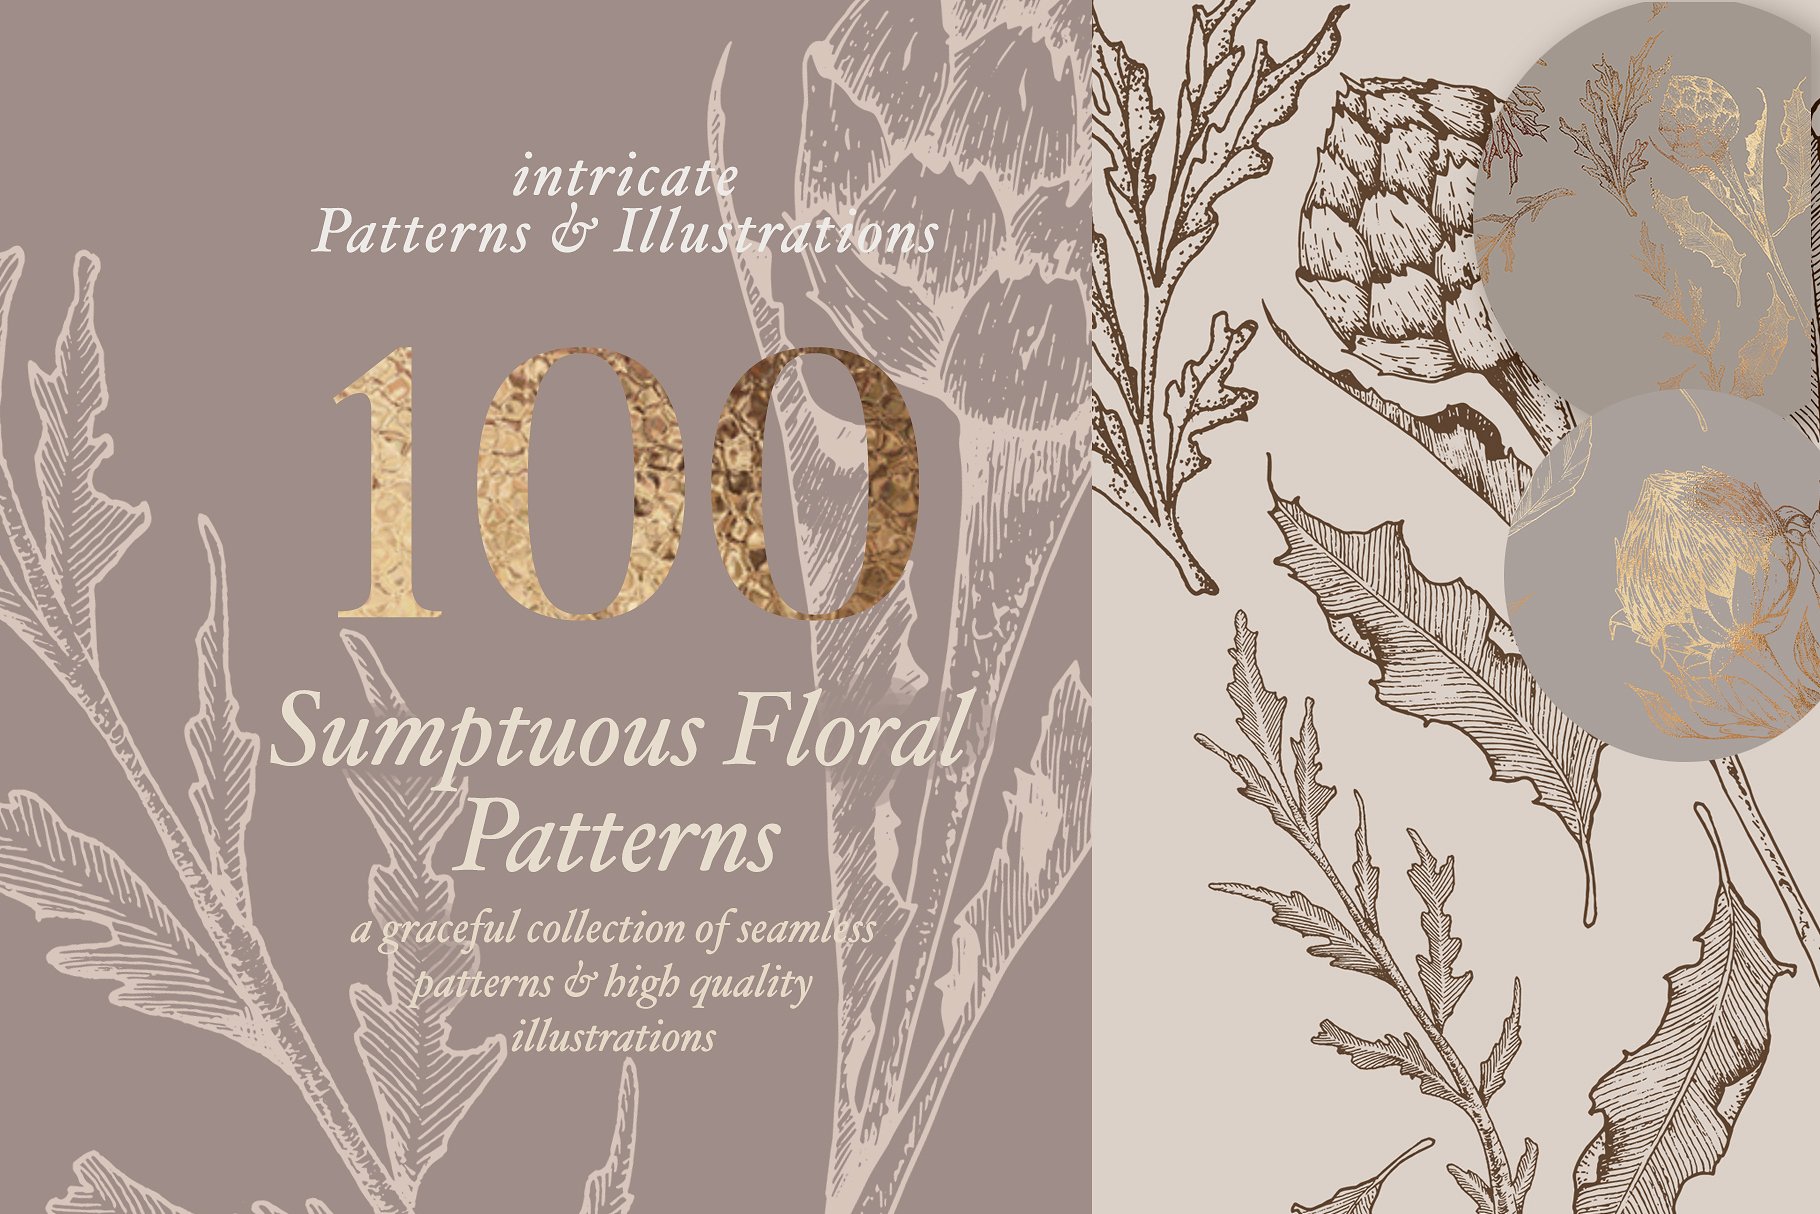 超高清分辨率花卉图案与插图 Floral Patterns & Illustrations [2.19GB]插图